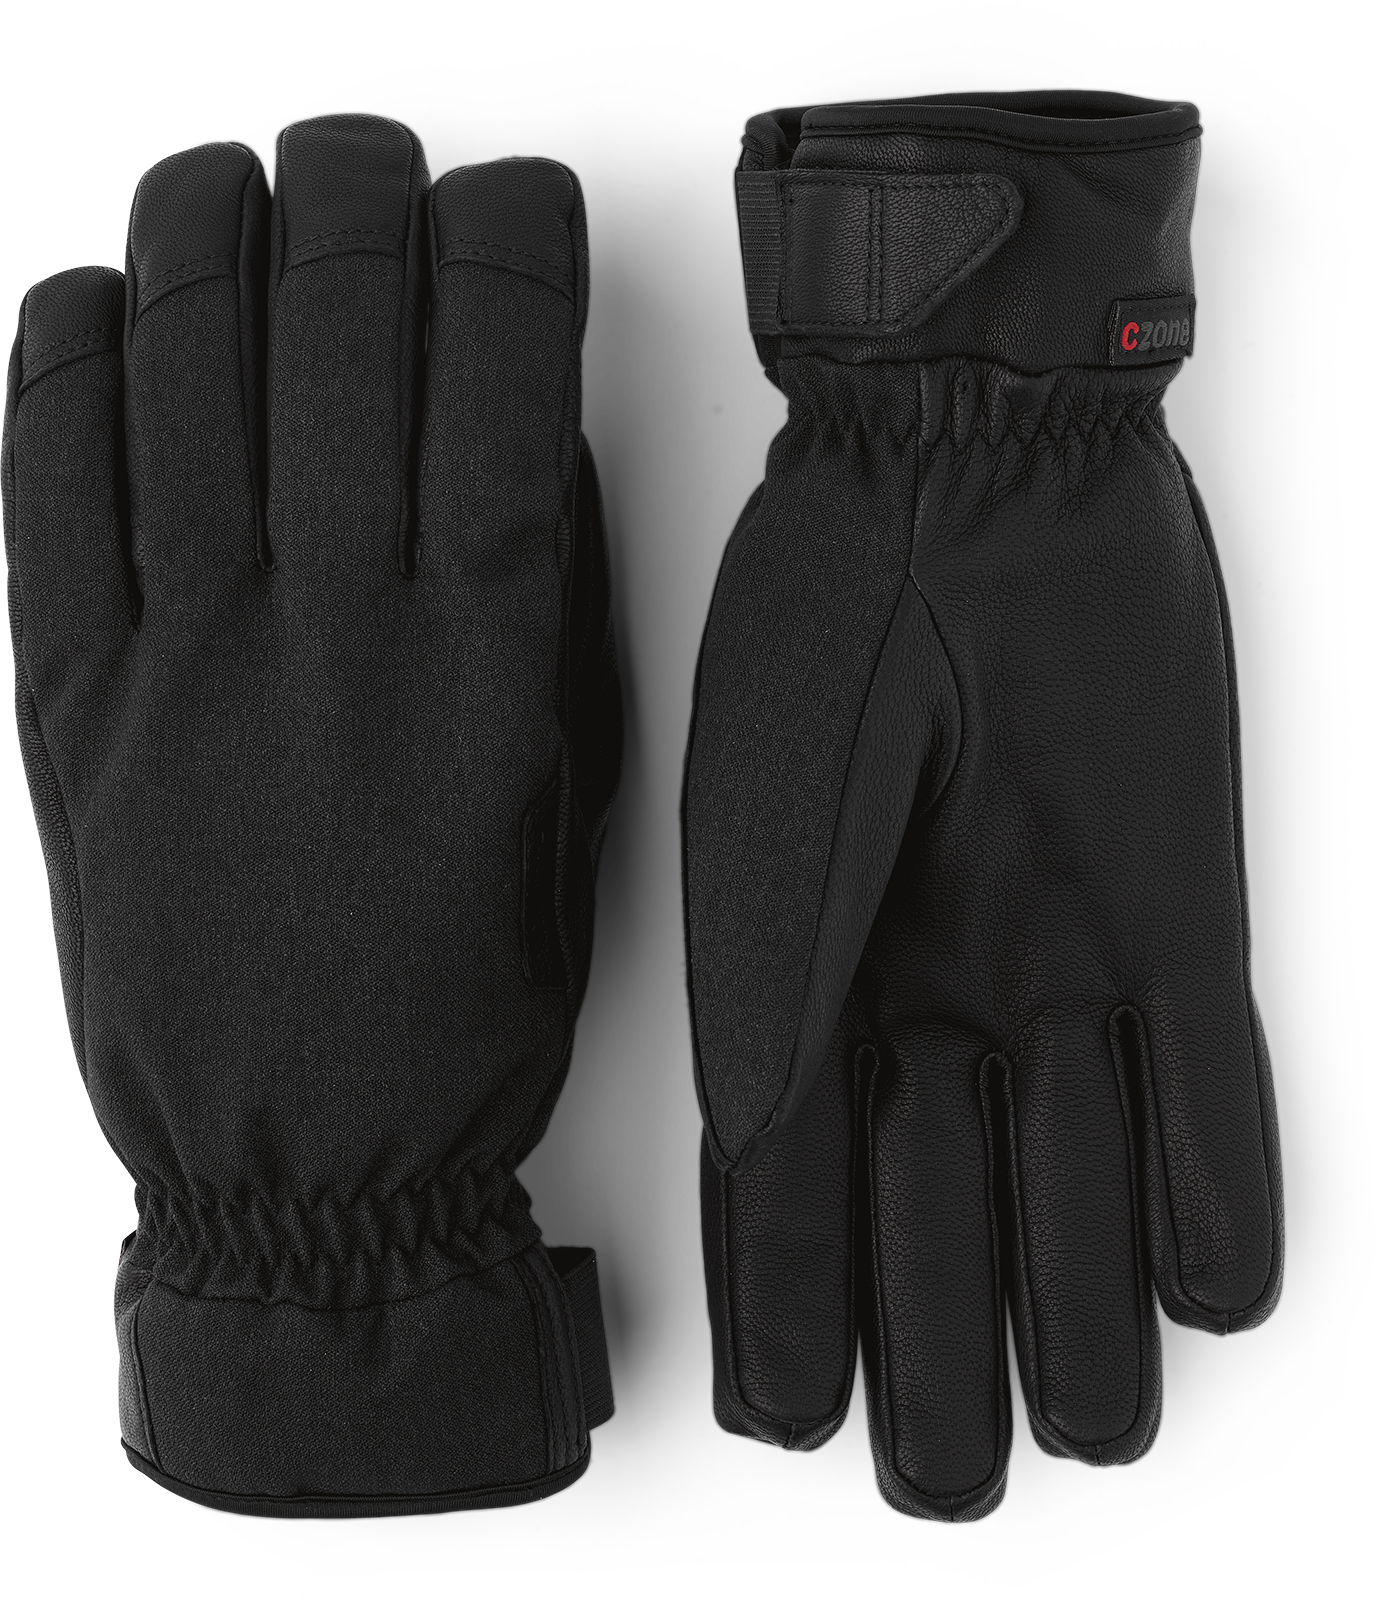 HESTRA Handcuffs ladies 90/17 mm Size 5/9 91880 Ski Glove Mitten retainers Leash 